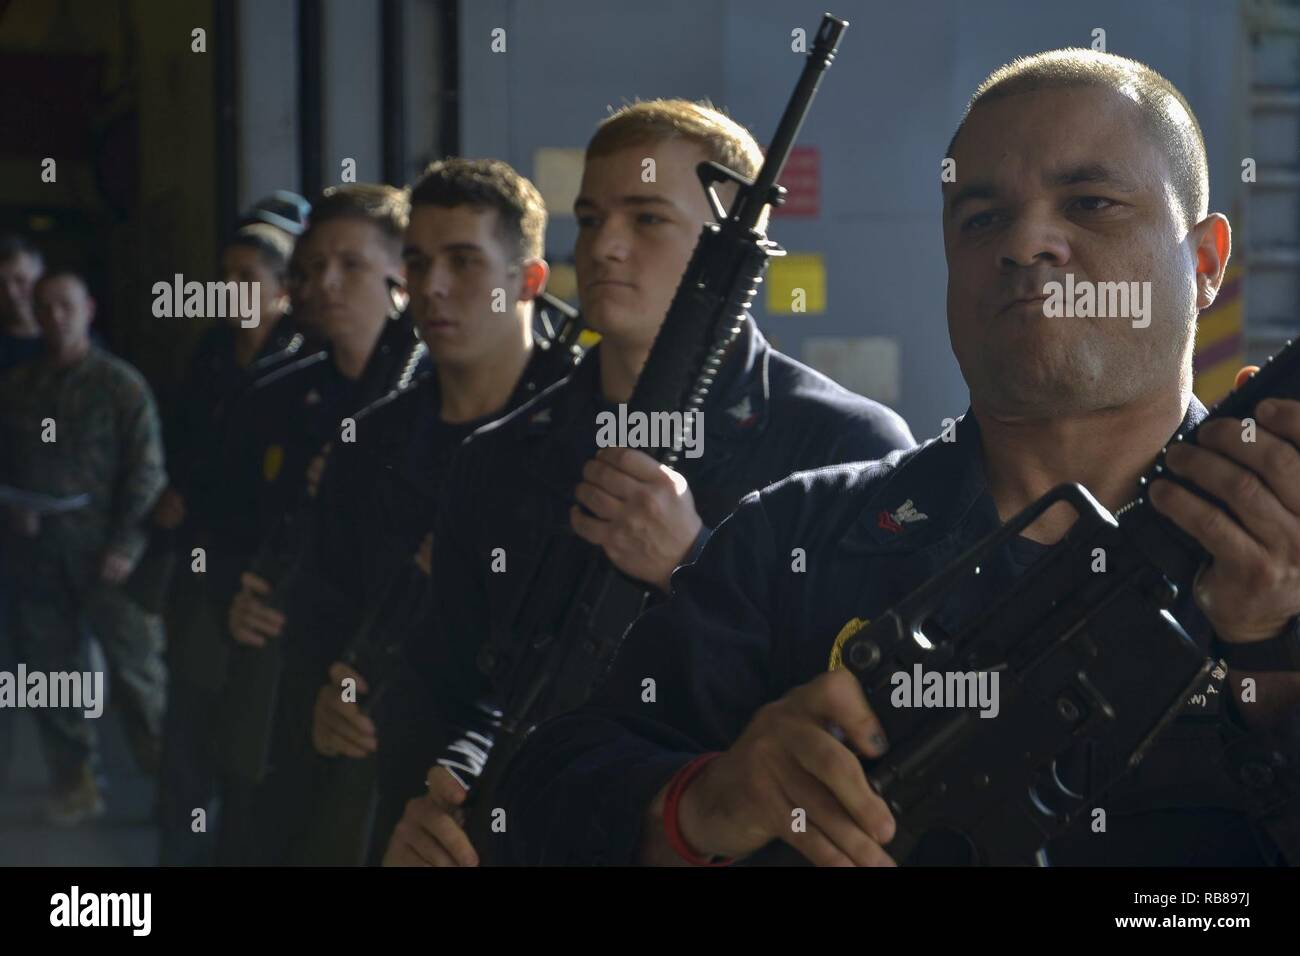 Atlantik (31. 8, 2016) - ein Gewehr Detail präsentiert Arme während einer Bestattung auf See Generalprobe im Hangar Bucht von Amphibisches Schiff USS Iwo Jima (LHD7). Iwo Jima wird derzeit verfolgt Mobility-Seaman (MOB-S) und Mobility-Engineering (MOB-E) Zertifizierungen. Stockfoto